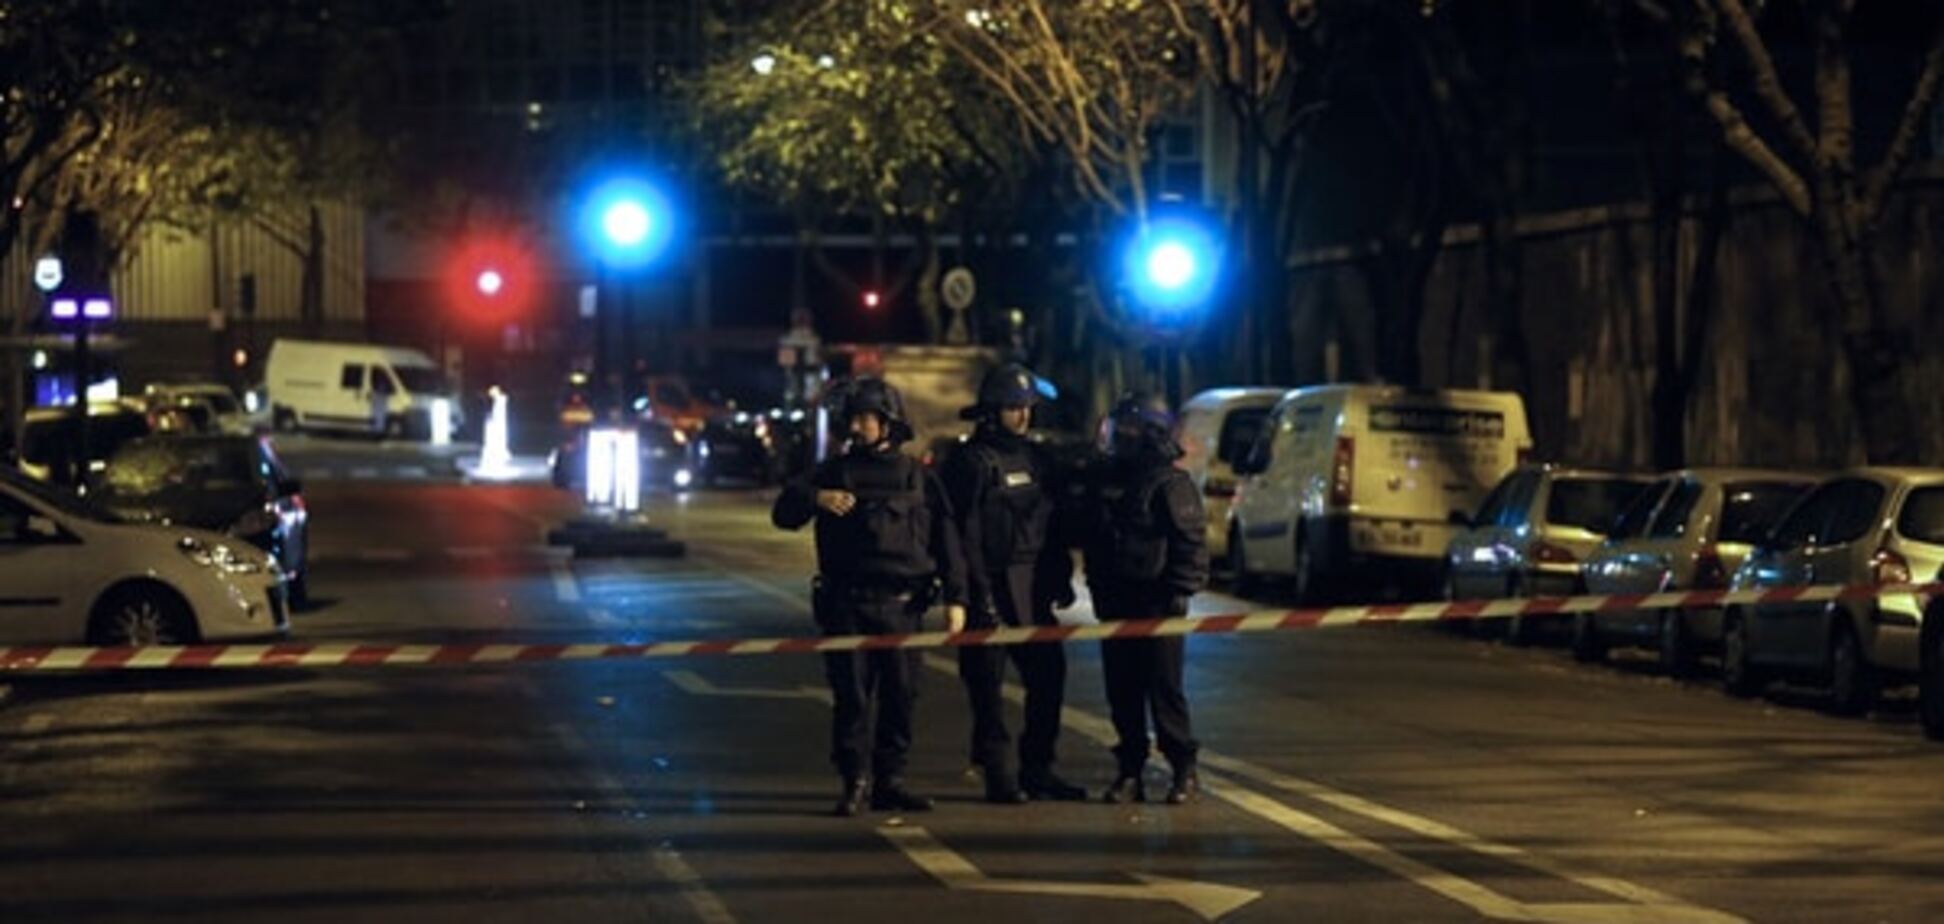 Закрытые границы: какие страны усилили безопасность после терактов в Париже